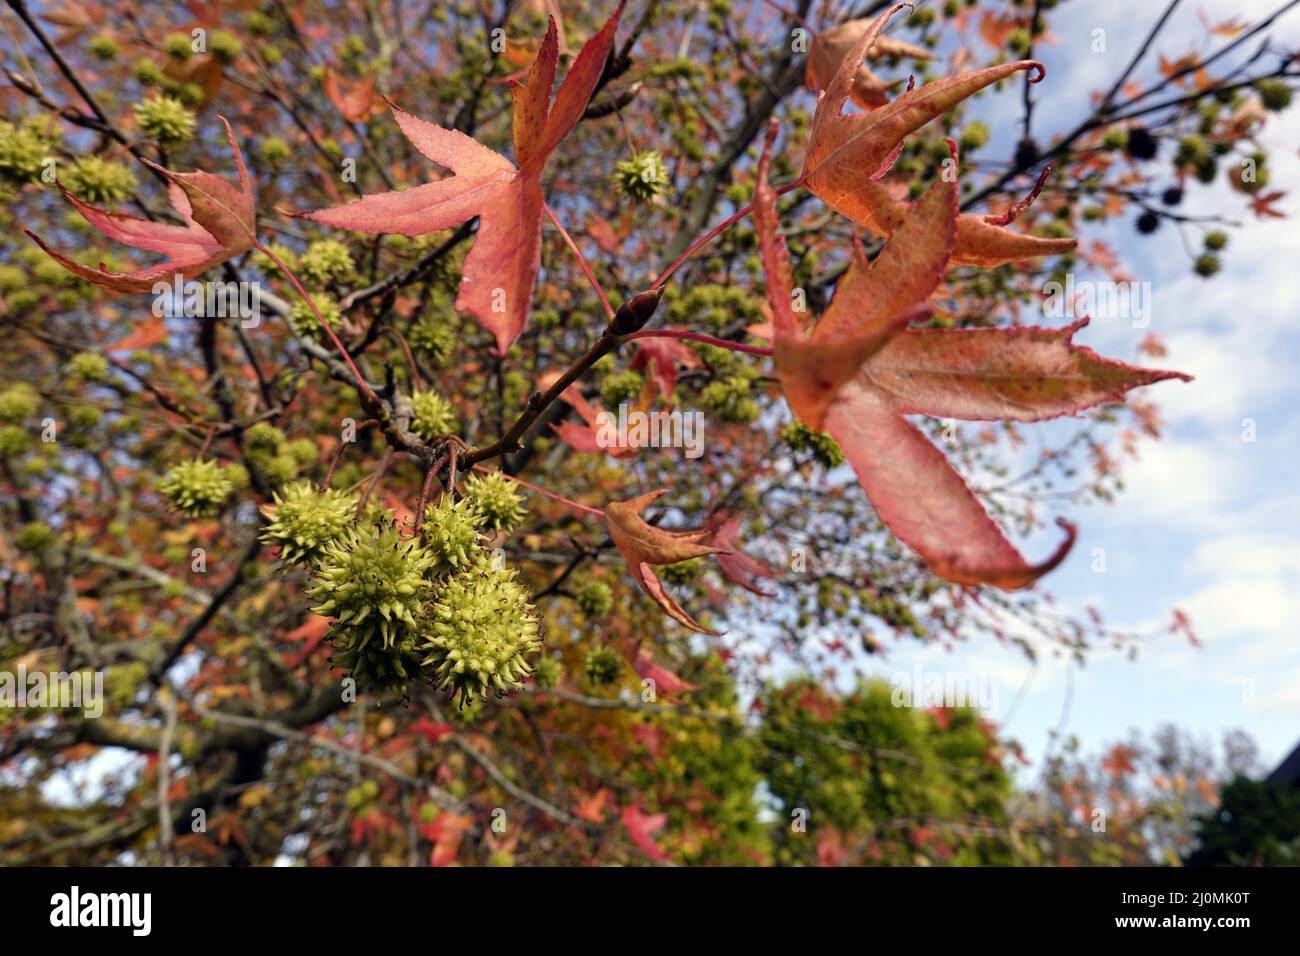 Arbre ambre américain (Liquidambar styraciflua) - arbre aux fruits et feuillage de couleur automnale Banque D'Images